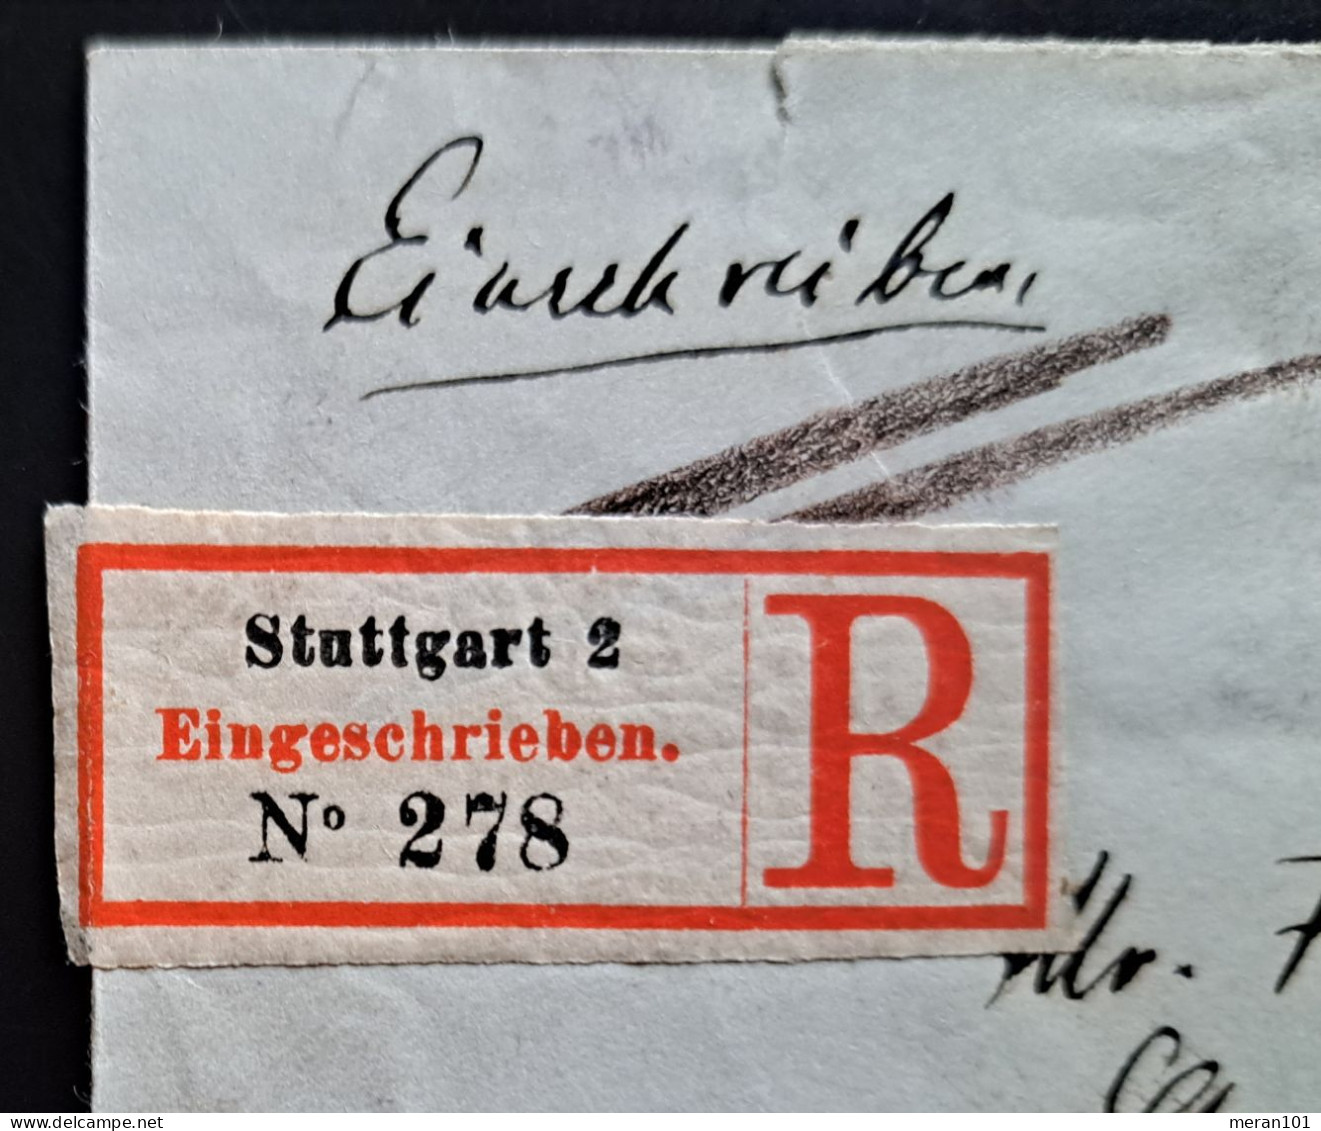 Württemberg 1889, Einschreibe Umschlag Stuttgart Nach Antwerpen, Zusatzfrankatu - Briefe U. Dokumente